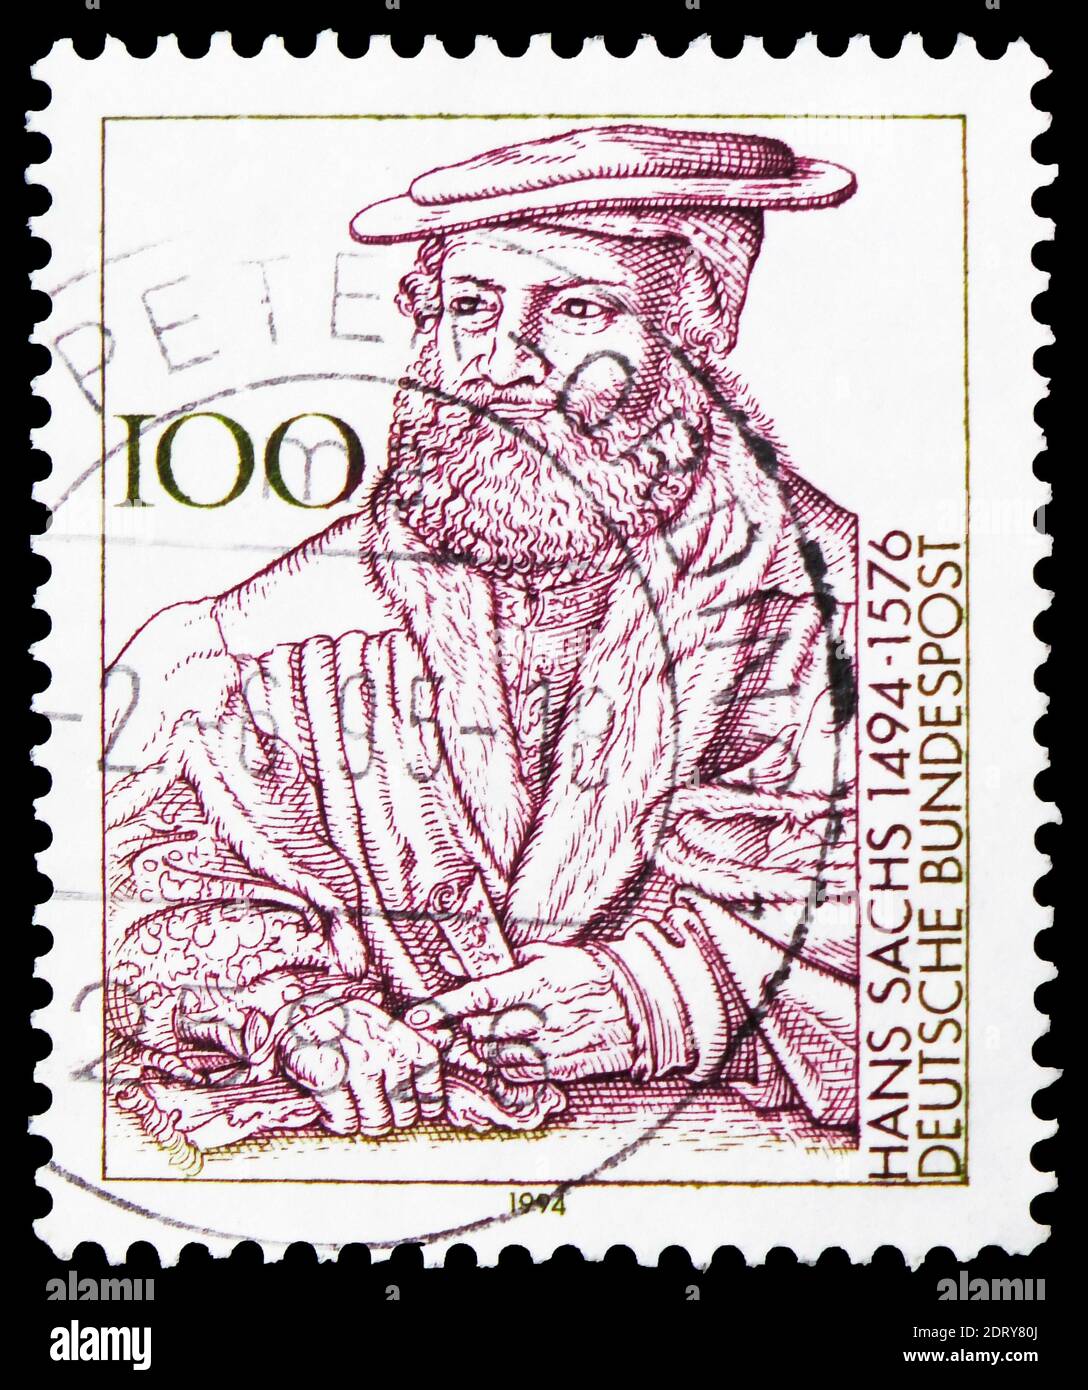 MOSKAU, RUSSLAND - 20. FEBRUAR 2019: Eine in Deutschland, Bundesrepublik, gedruckte Briefmarke zeigt Hans Sachs (Meistersinger und Dichter), Serie, um 1994 Stockfoto